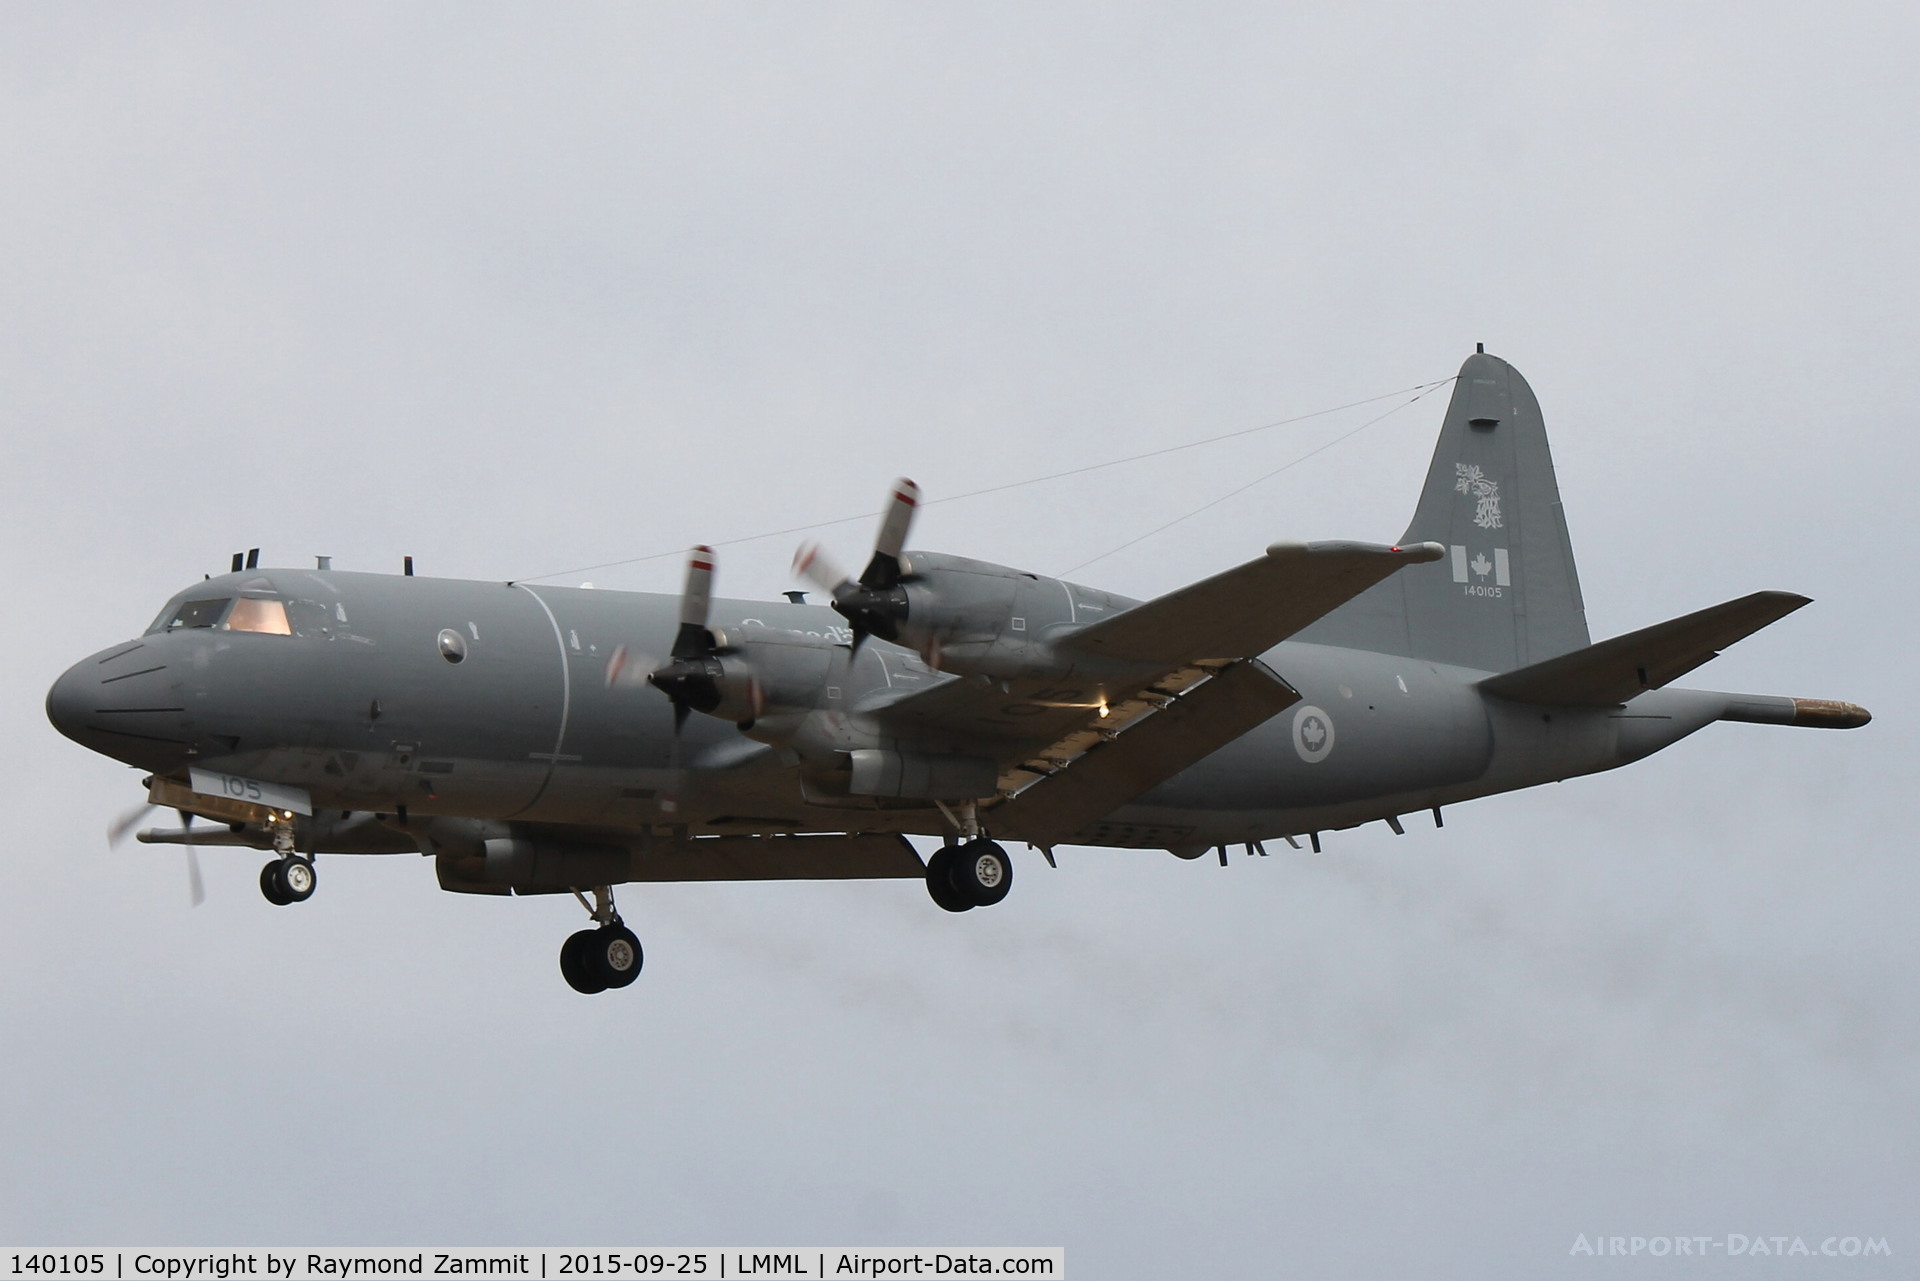 140105, Lockheed CP-140 Aurora C/N 285B-5704, Lockheed CP-140 Aurora 140105 Canadian Air Force